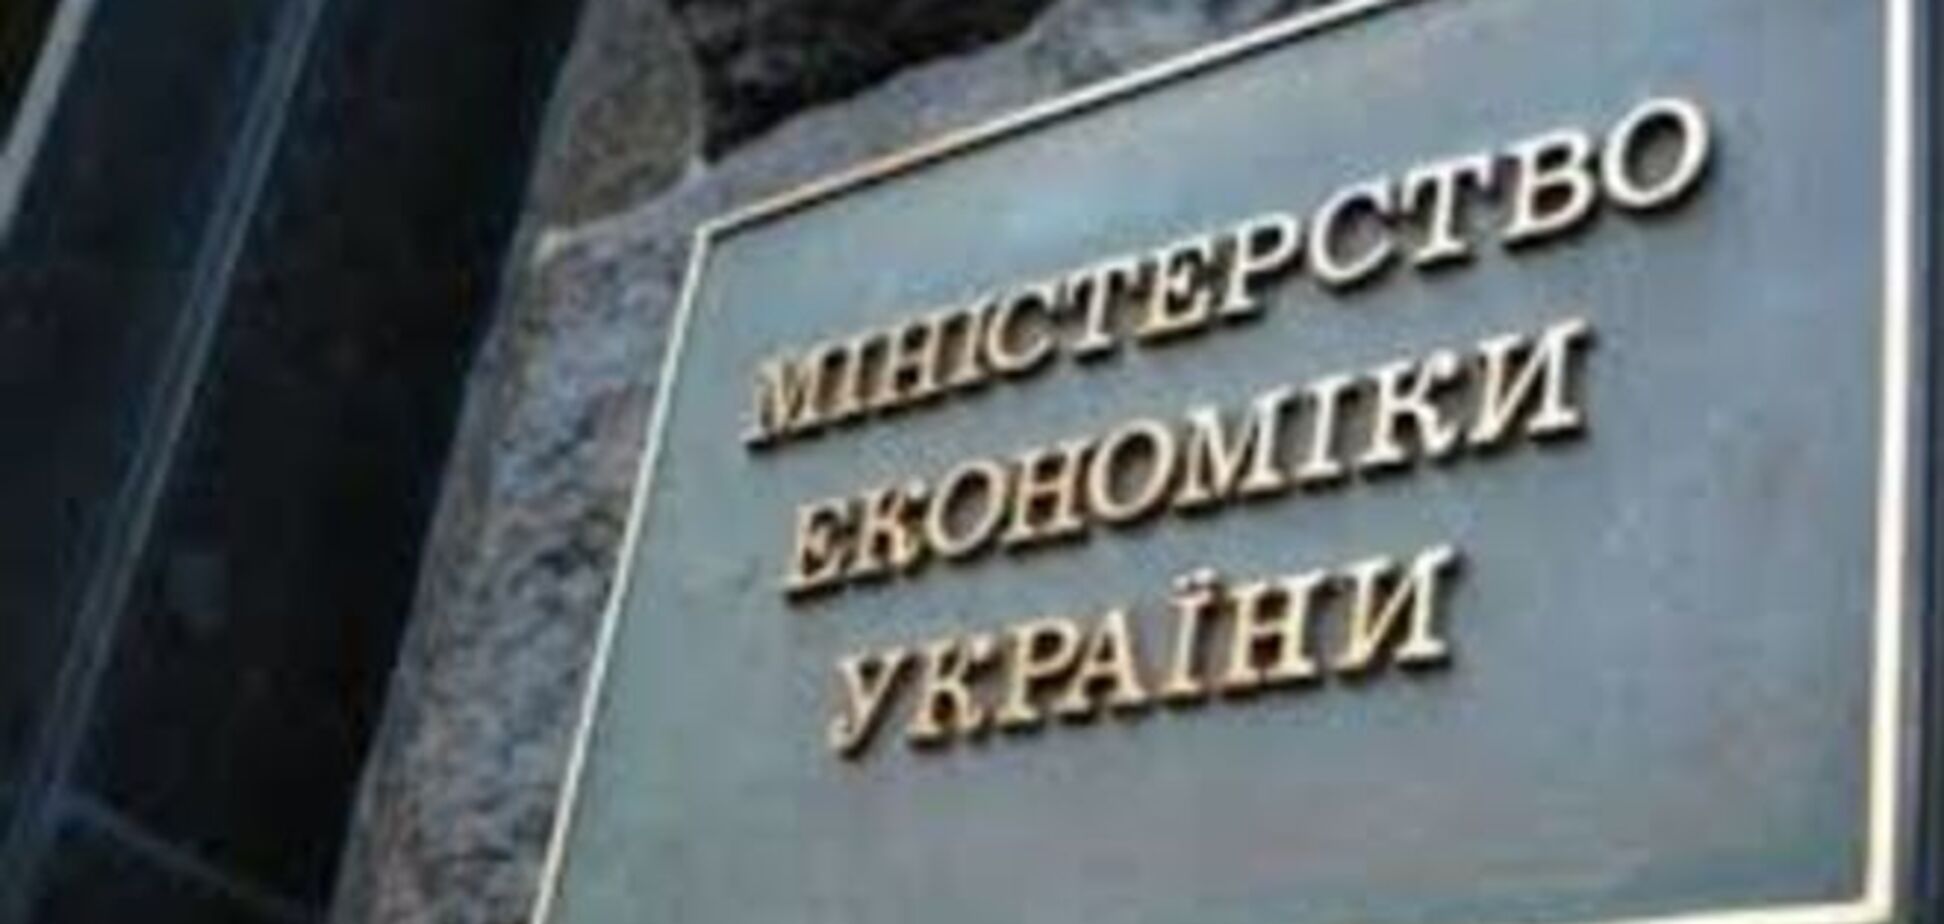 Абромавичус хочет пополнить казну за счет 'Укрнафты' и других госкомпаний - СМИ